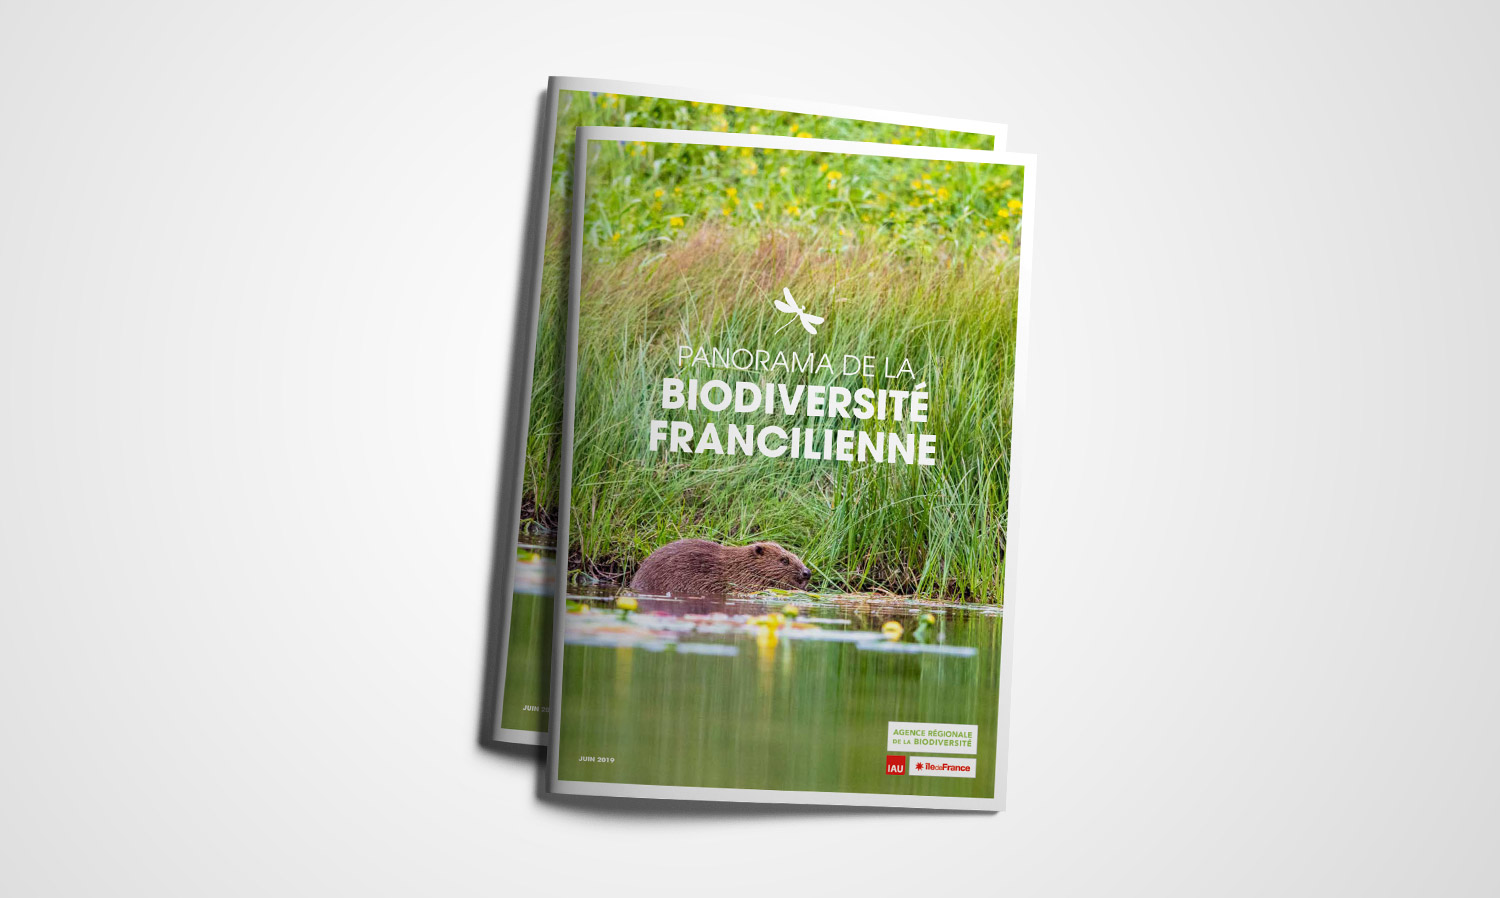 Agence régionale de la biodiversité en Île-de-France - Publications